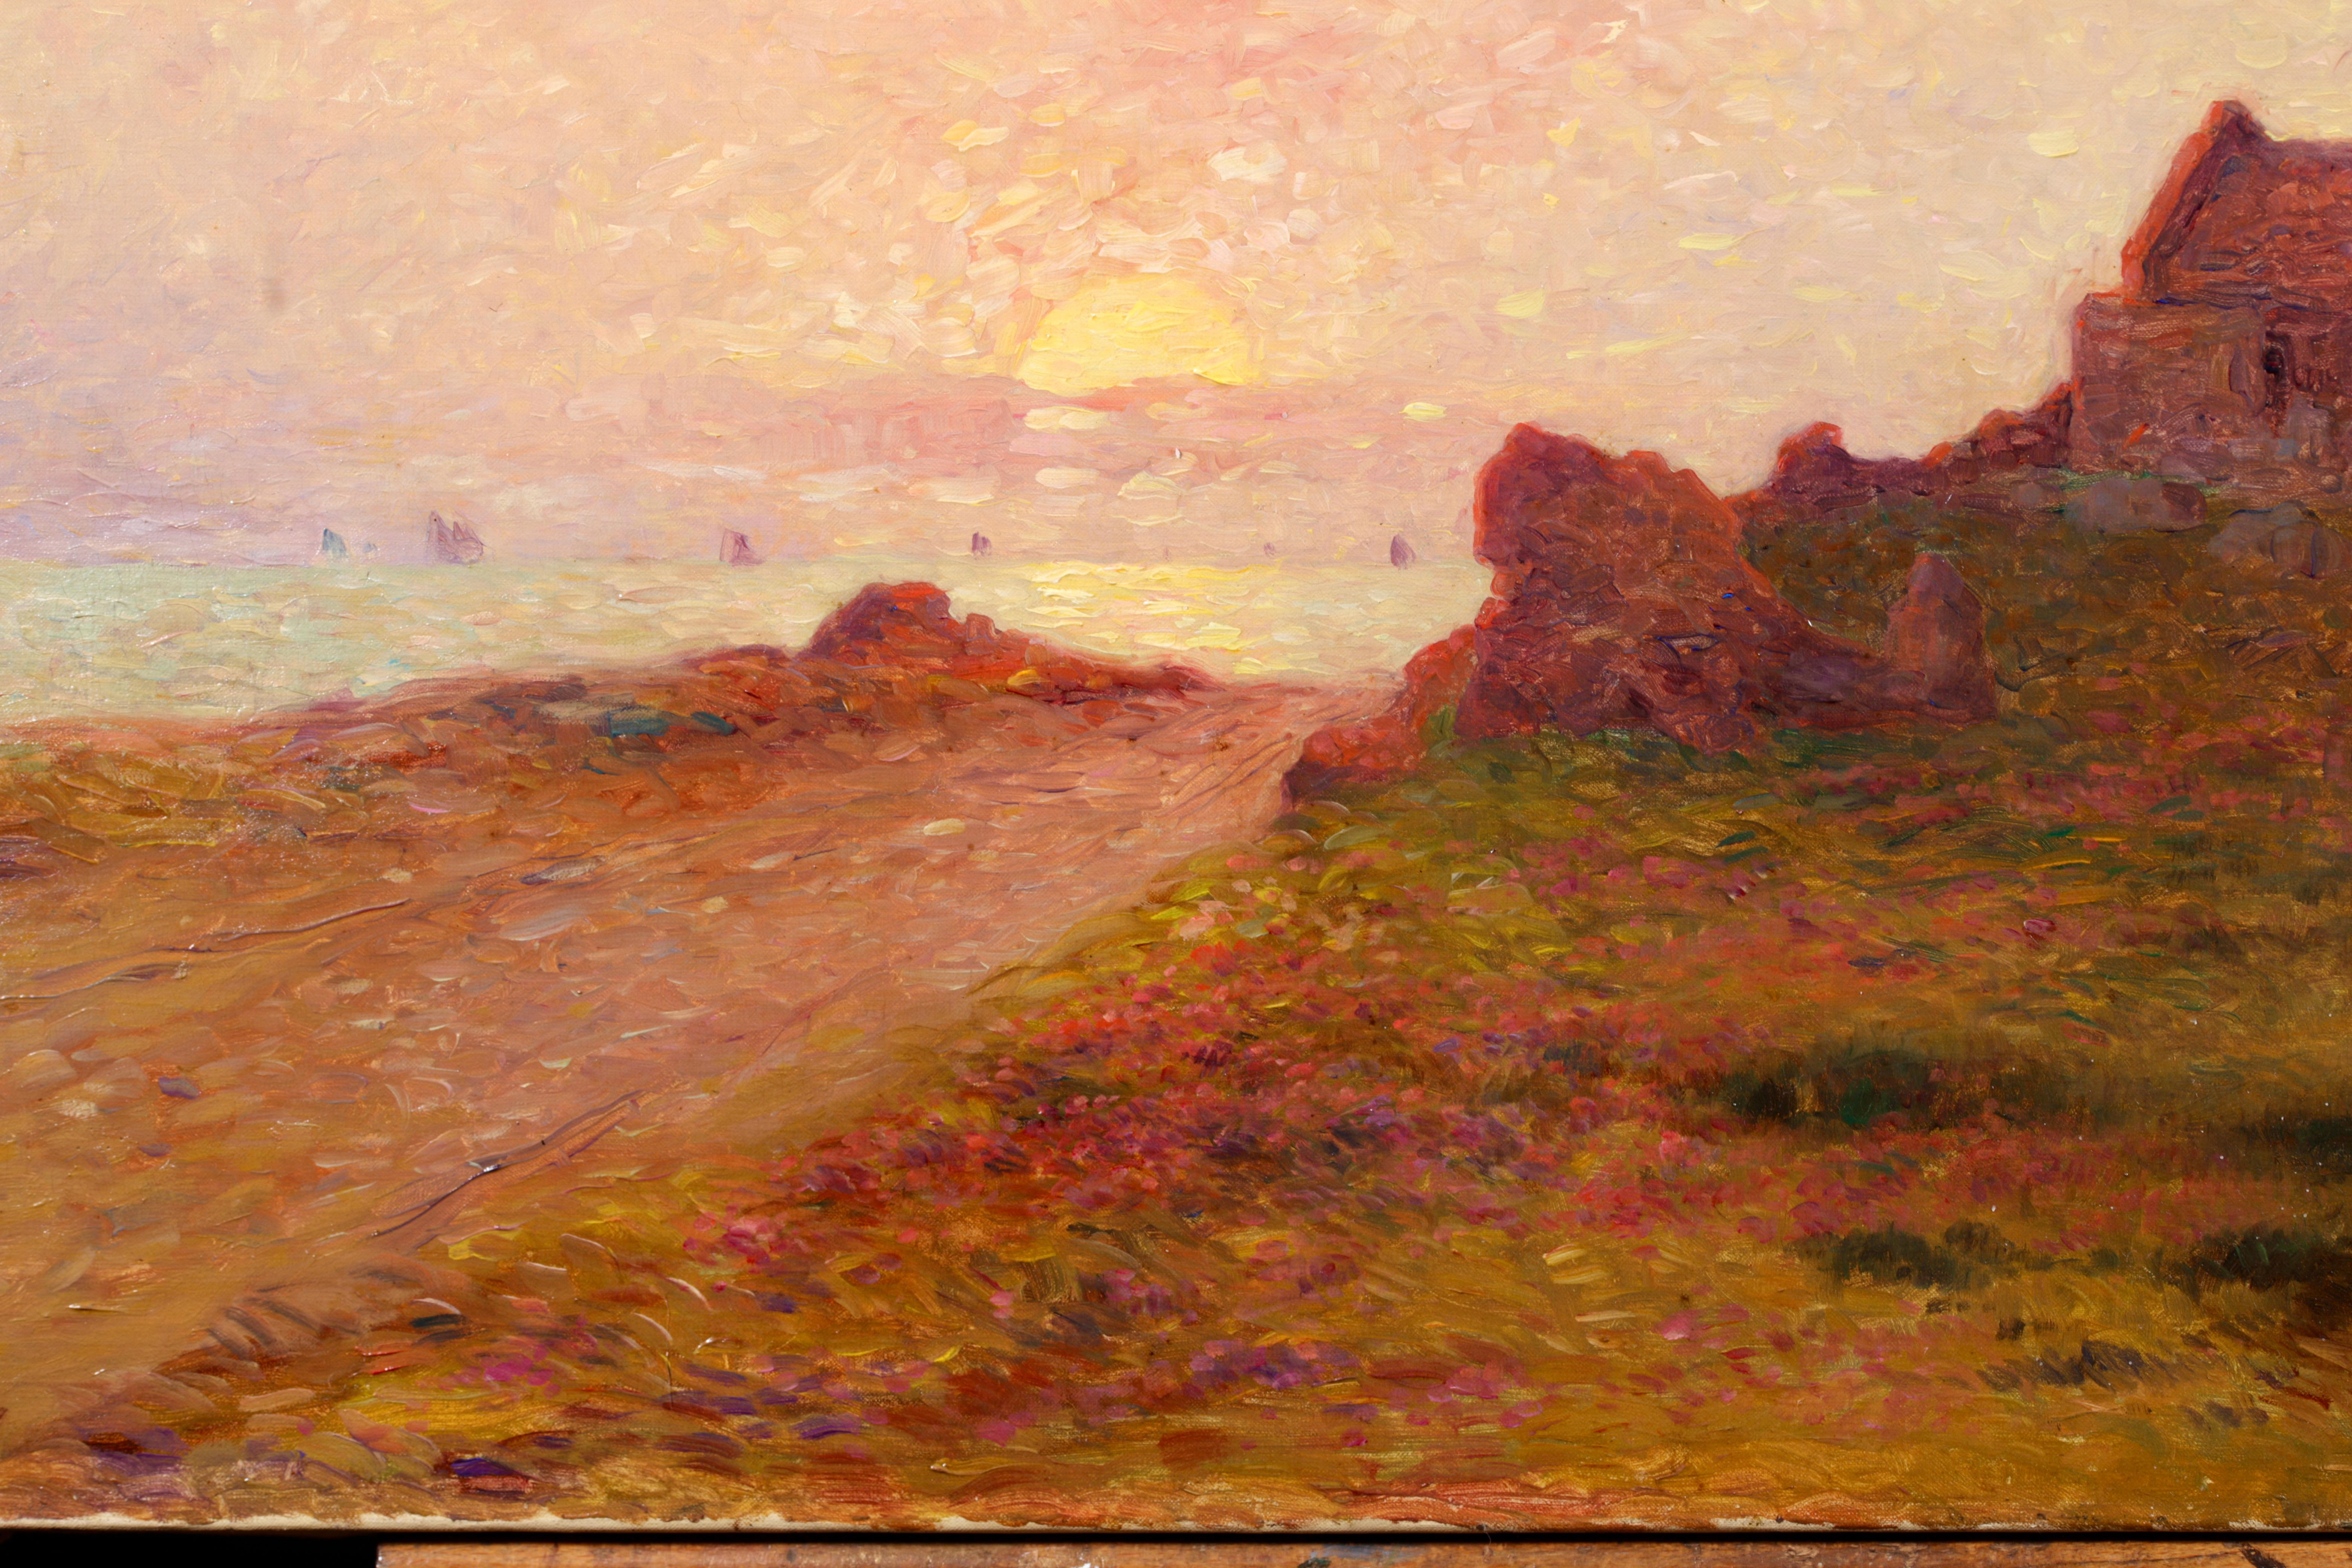 Bateaux sur la mer - Post Impressionist Landscape Oil by Ferdinand du Puigaudeau 8